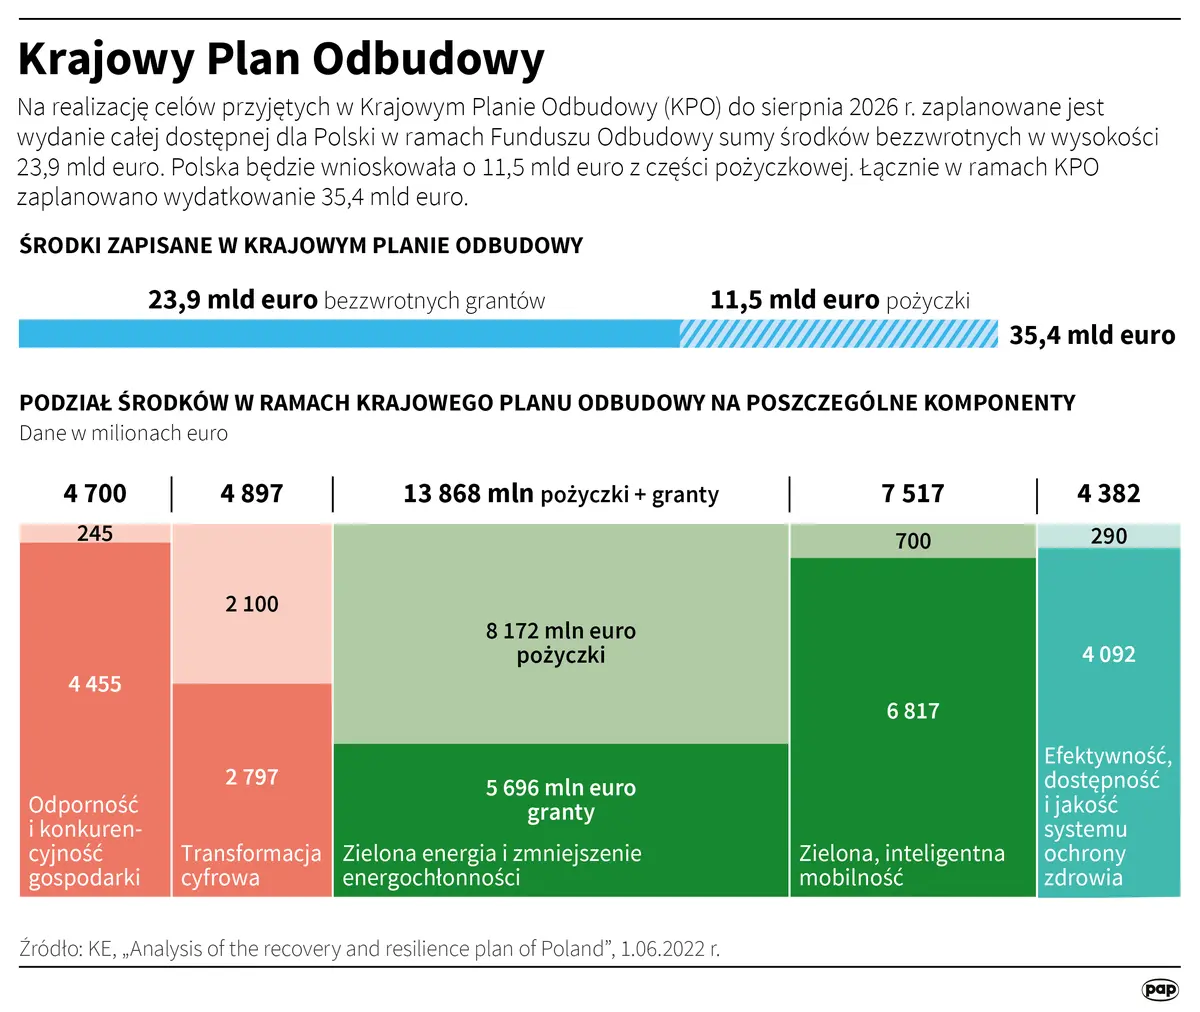 pilne co z miliardami euro dla polski w ramach kpo komisja europejska podjela decyzje grafika numer 1